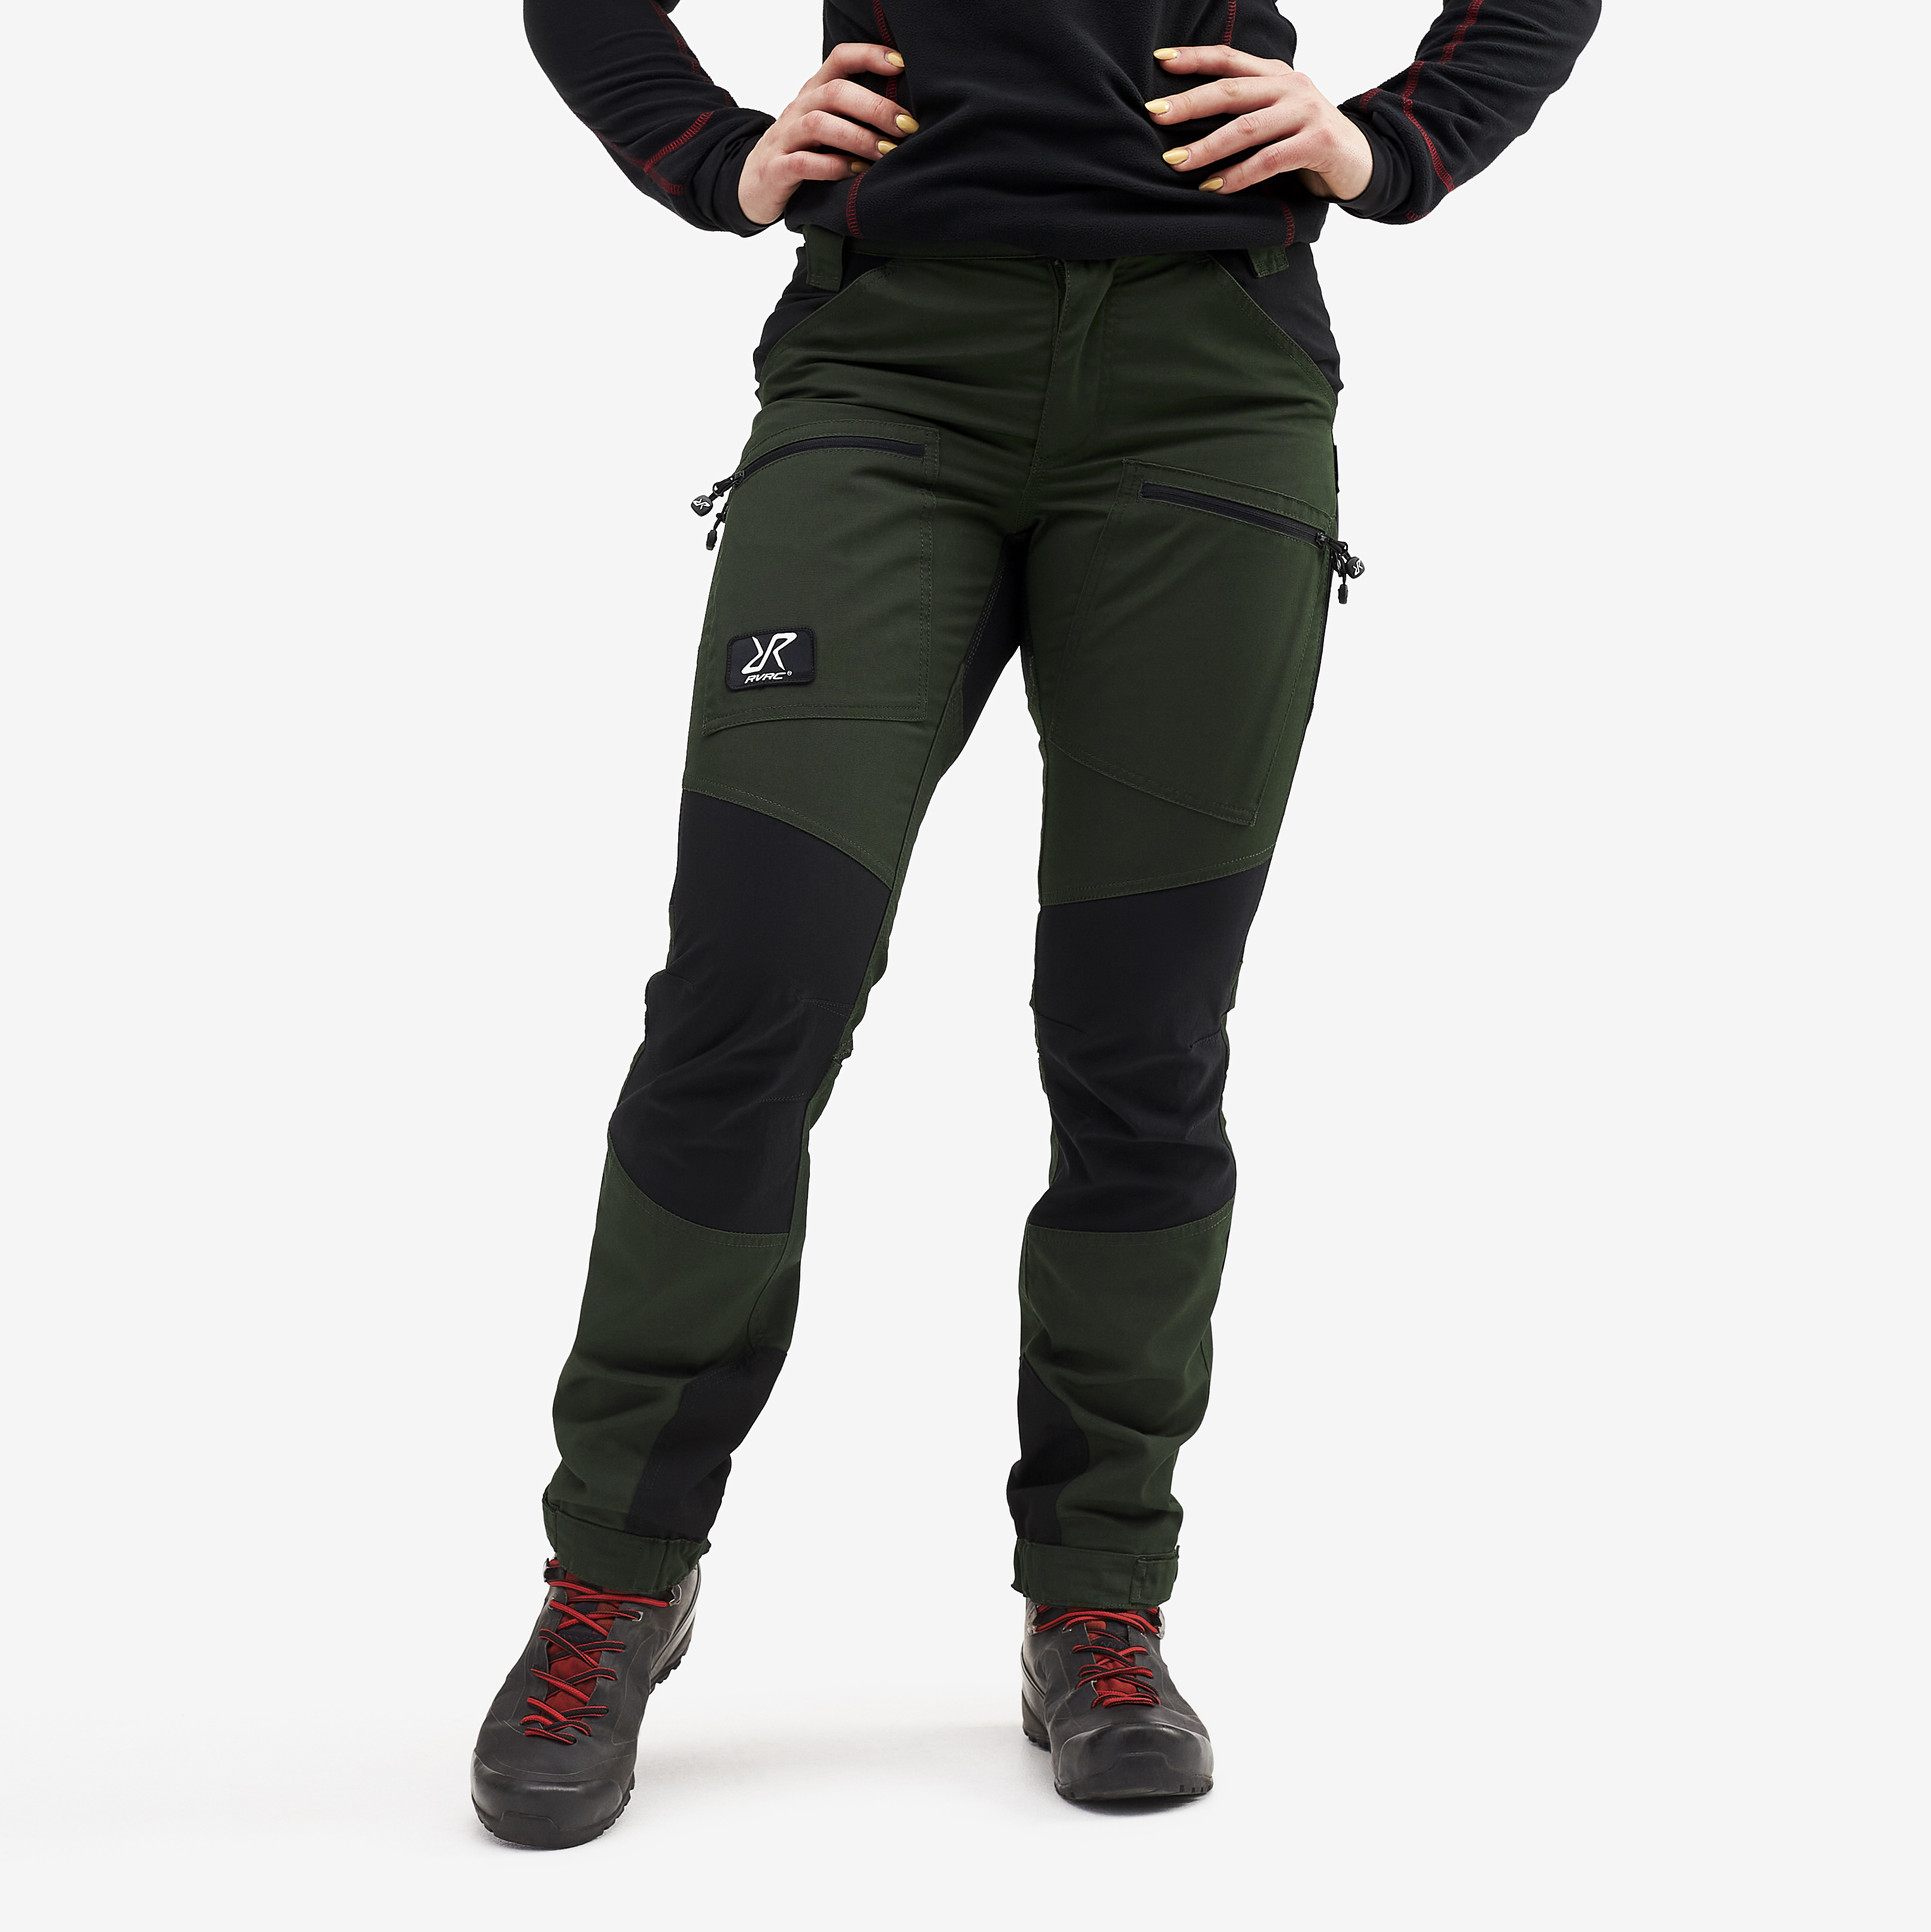 Nordwand Pro Short turistické kalhoty pro ženy v zelené barvě